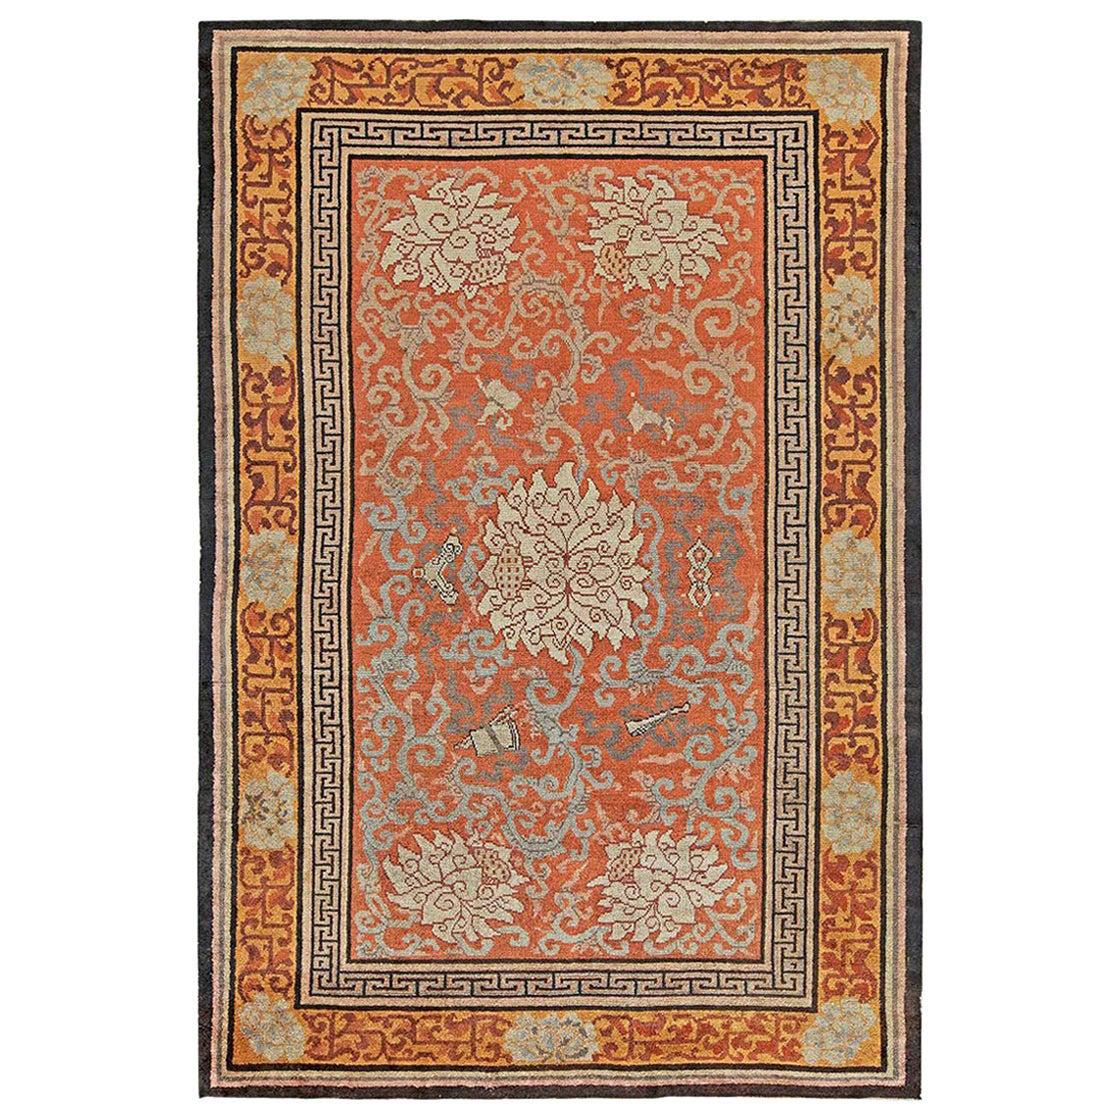 Early 20th Century Chinese Orange Handmade Silk Rug